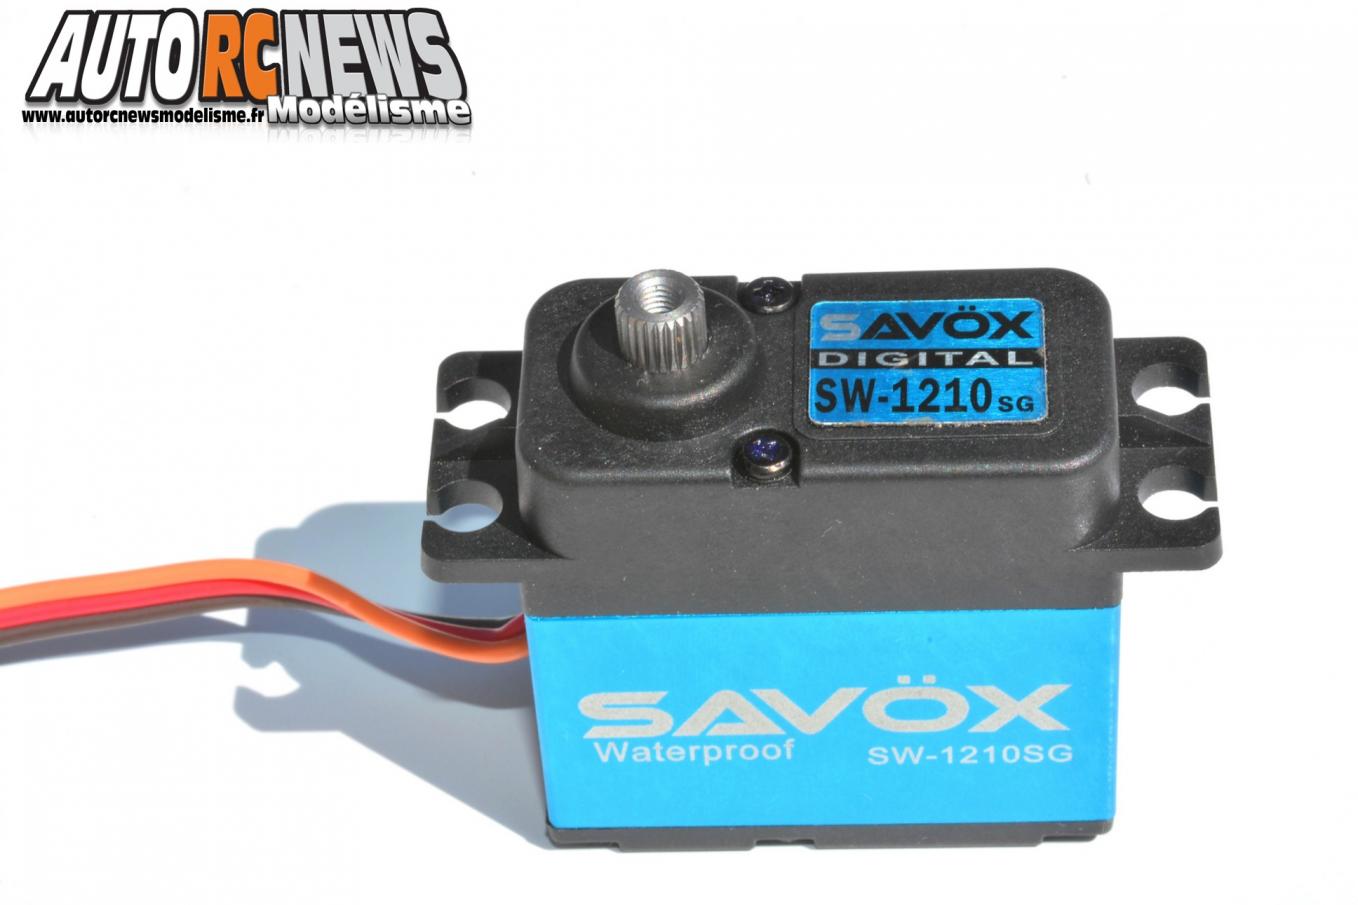 Servo Savox SW-1210SG waterproof possédant la norme ip67 pour les voitures radiocommandées thermiques et électriques.